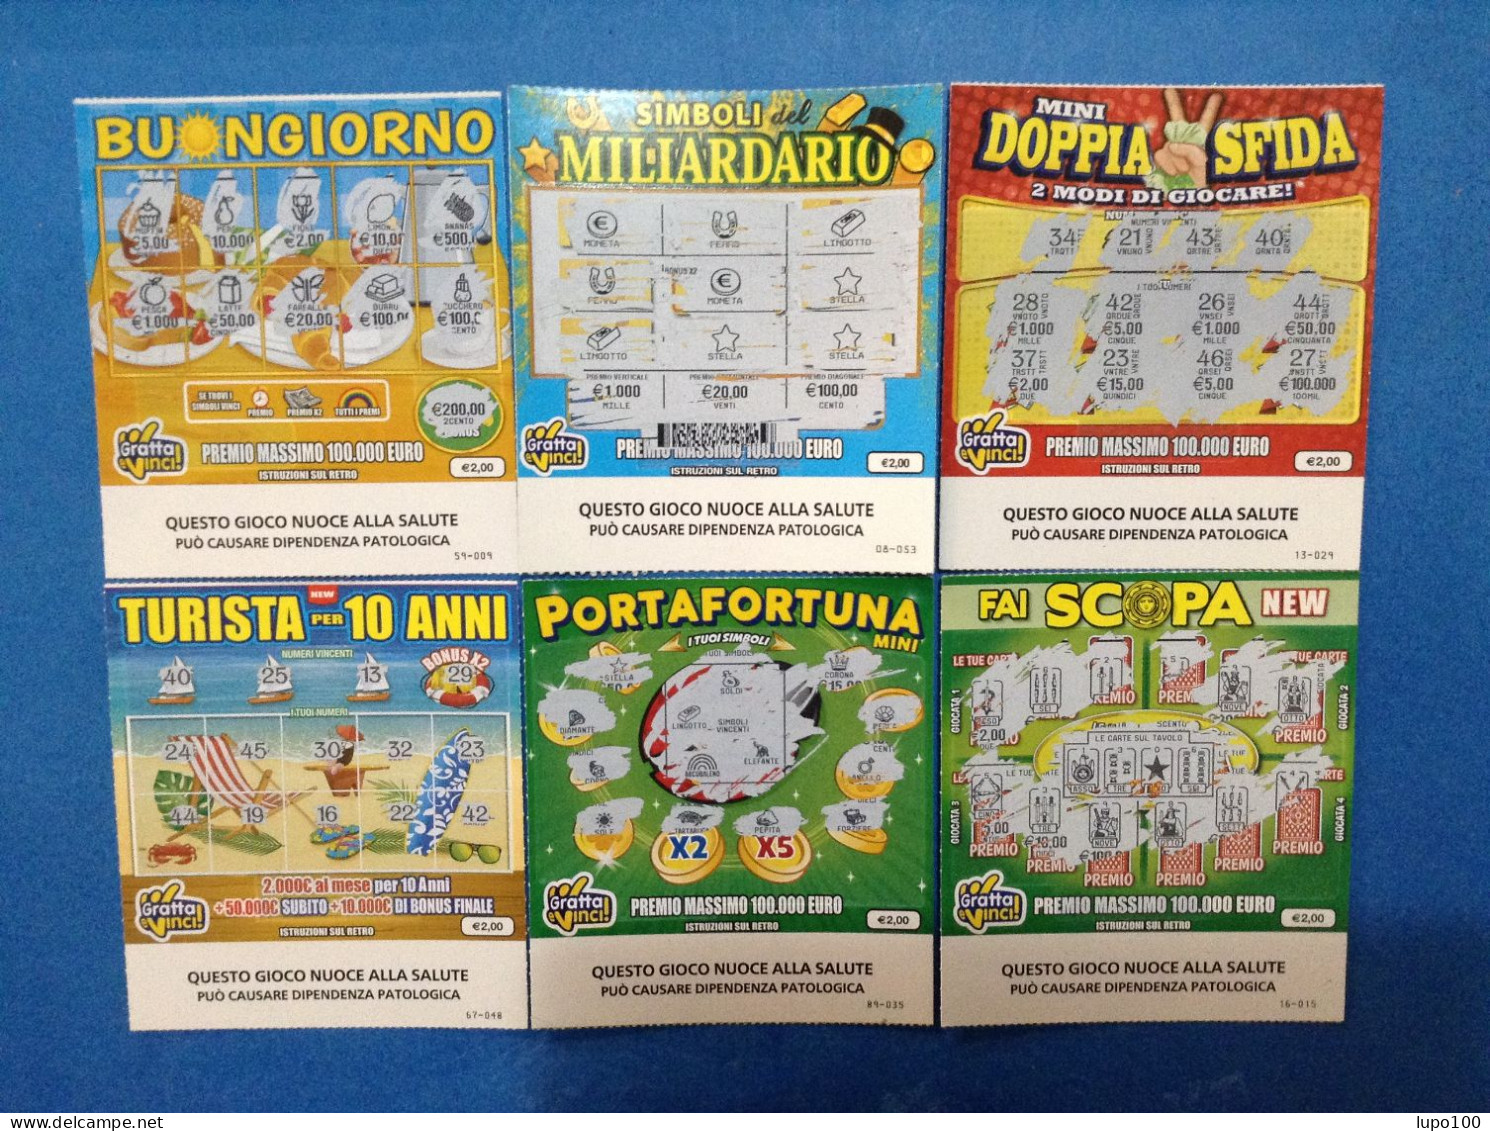 6 Biglietti Lotteria Gratta E Vinci Fai Scopa Portafortuna New Turista Per 10 Anni Mini Doppia Sfida Simboli Buongiorno - Billets De Loterie